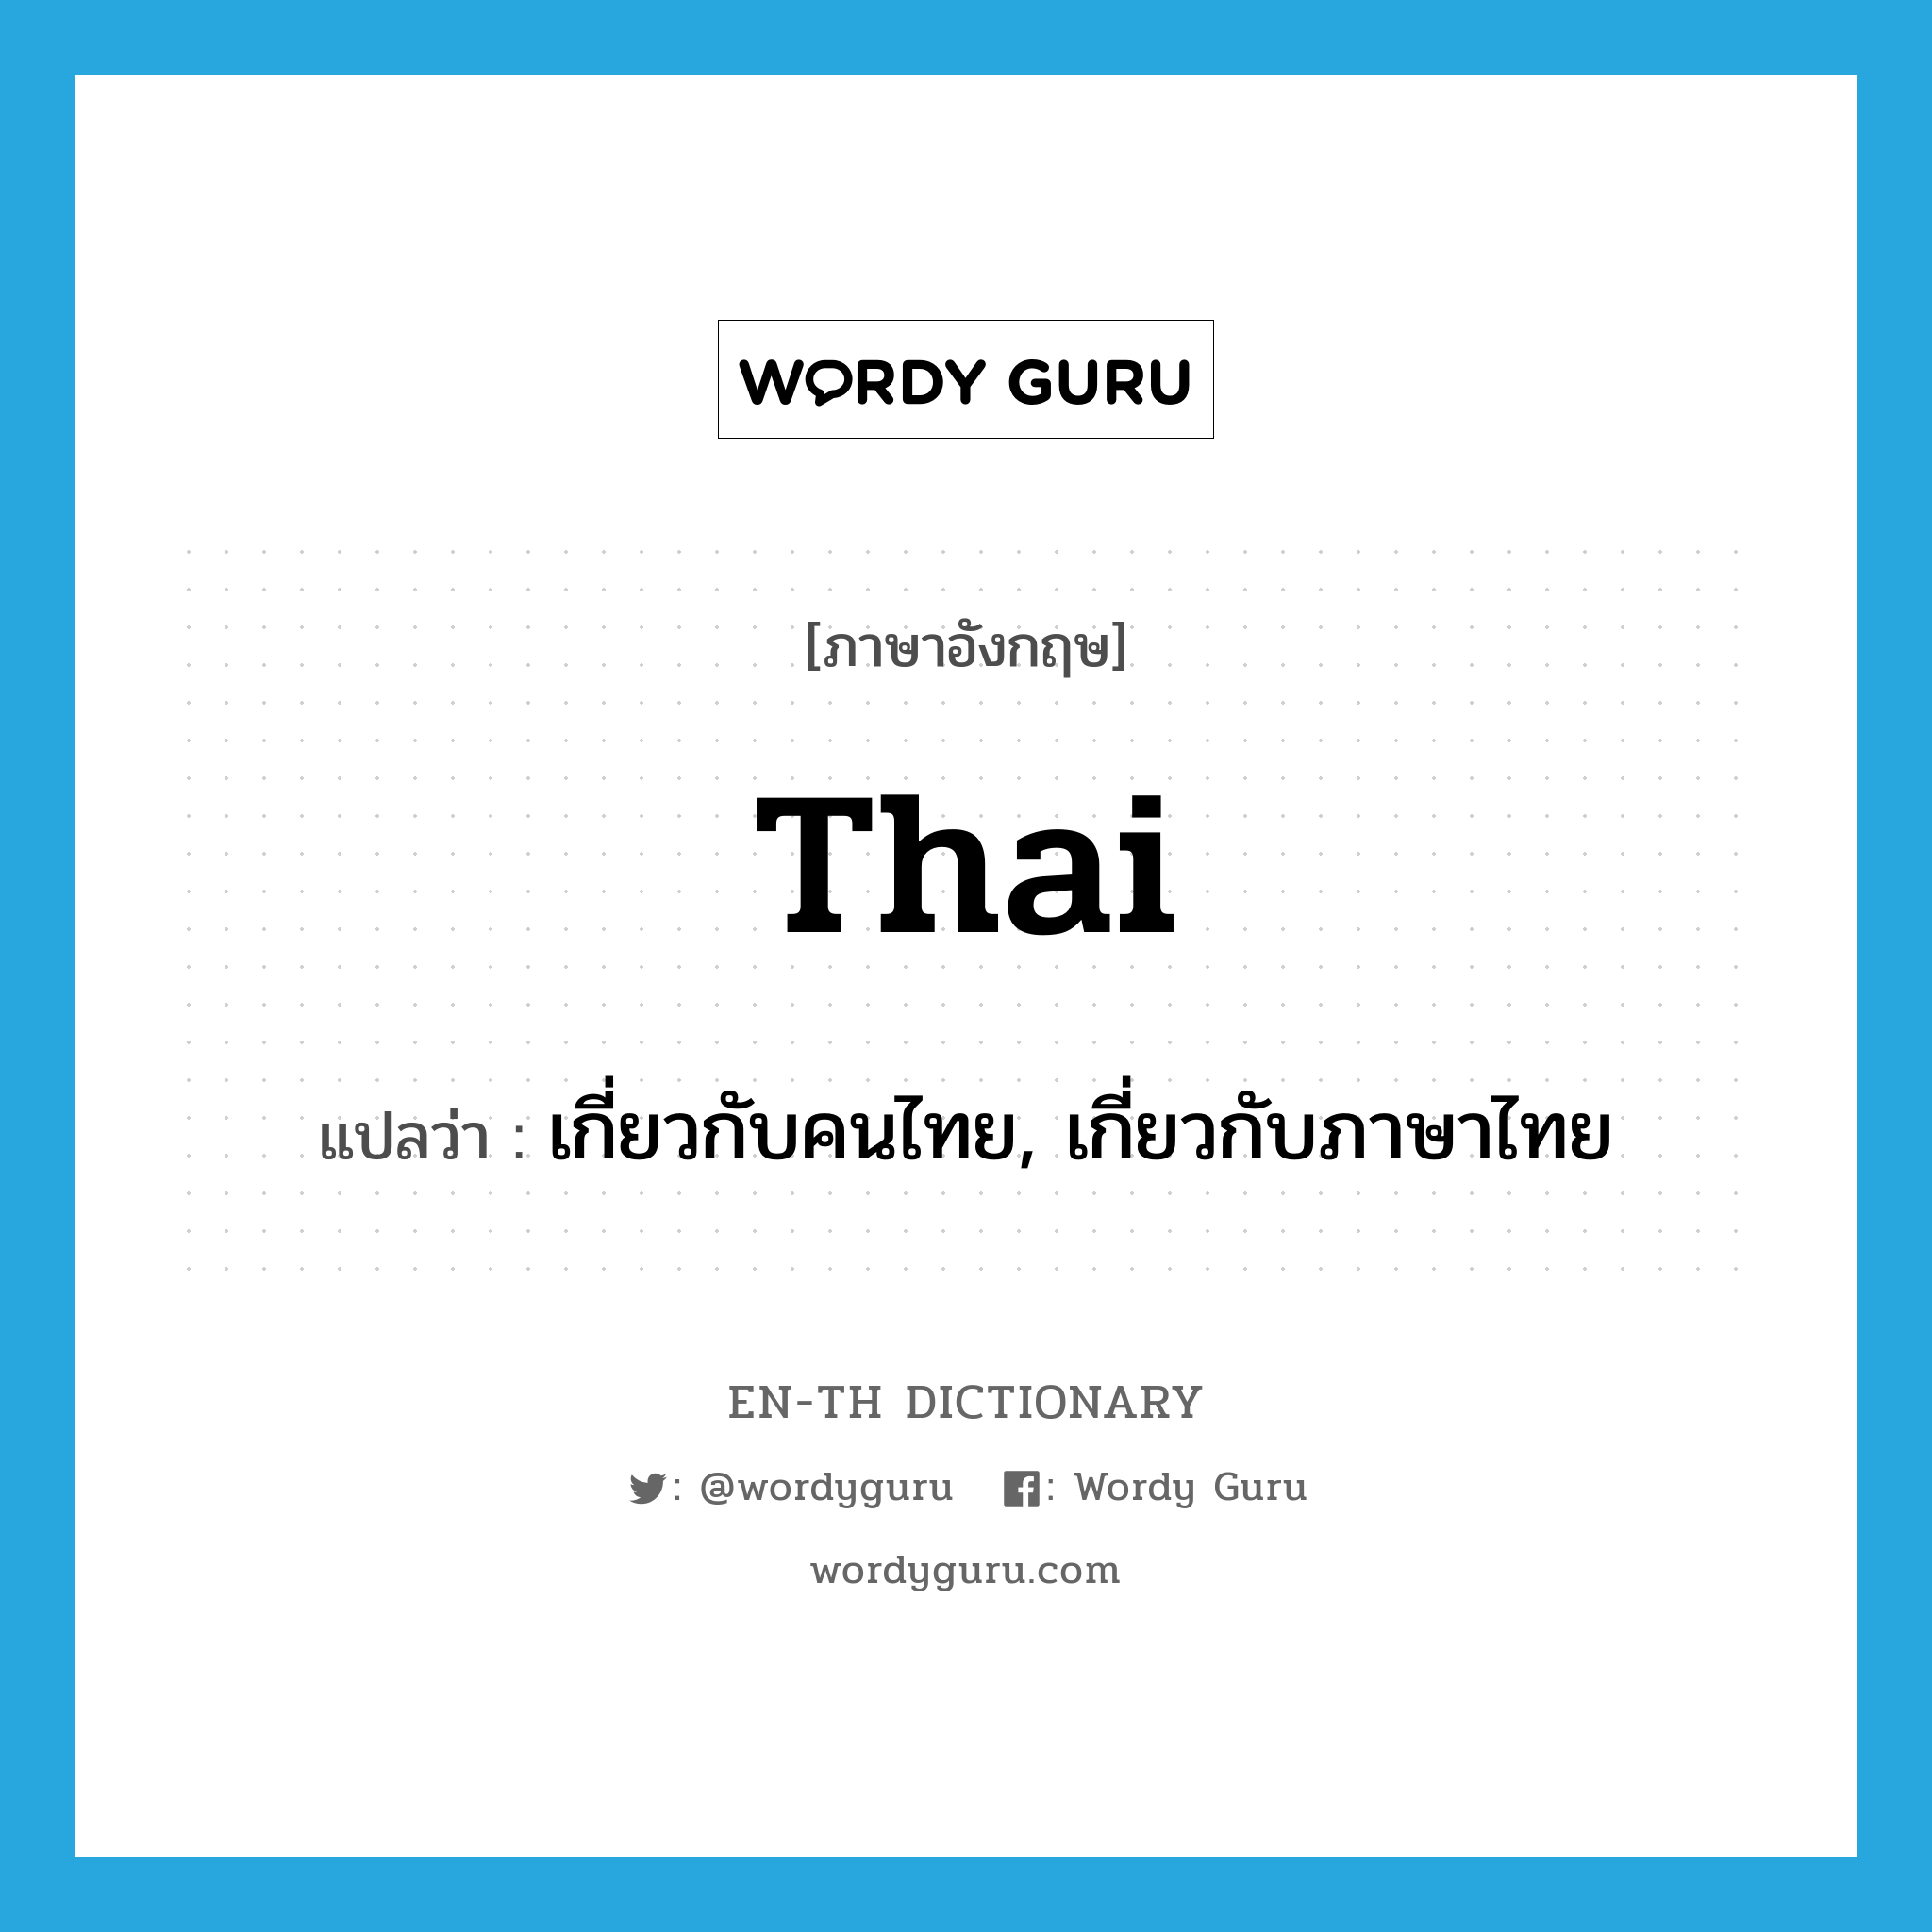 เกี่ยวกับคนไทย, เกี่ยวกับภาษาไทย ภาษาอังกฤษ?, คำศัพท์ภาษาอังกฤษ เกี่ยวกับคนไทย, เกี่ยวกับภาษาไทย แปลว่า Thai ประเภท ADJ หมวด ADJ